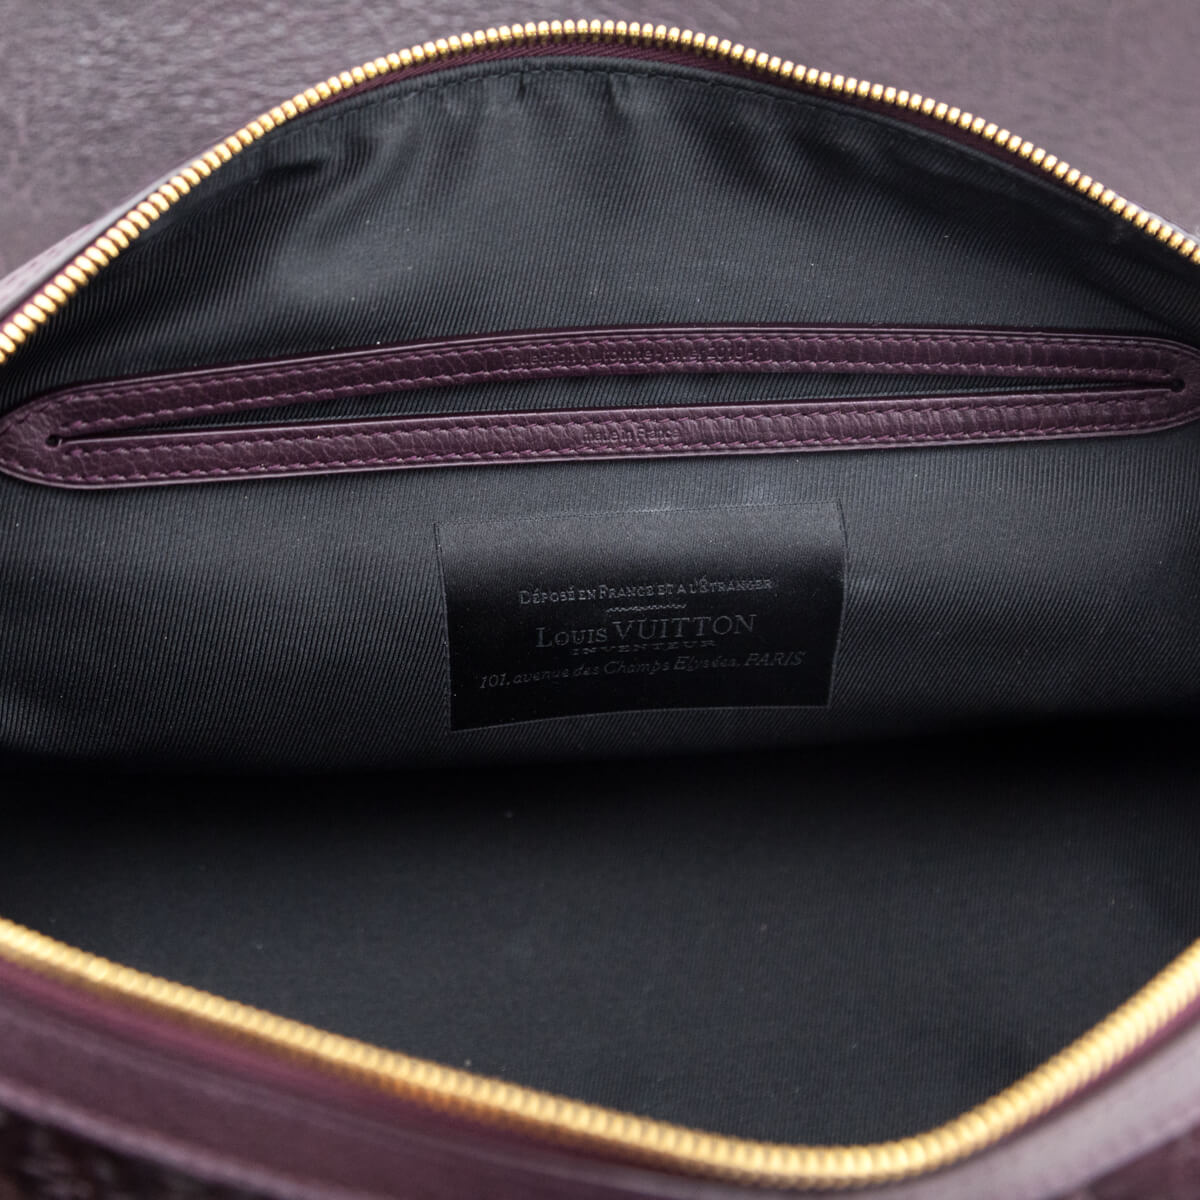 Authentic Louis Vuitton 101 champs elysees paris bag, Luxury, Bags